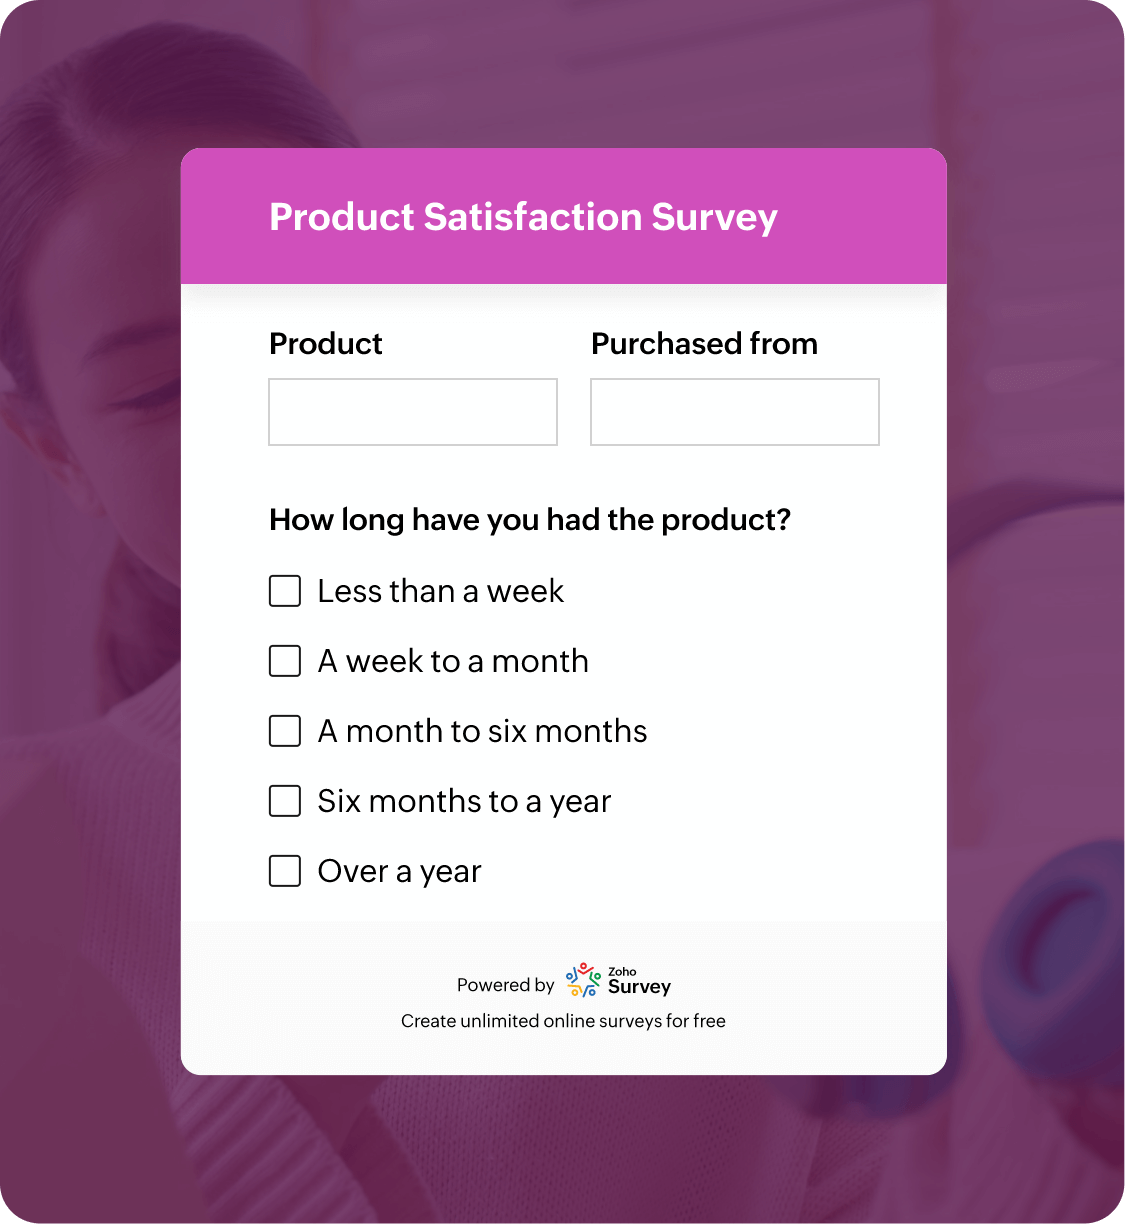 Product satisfaction survey questionnaire template